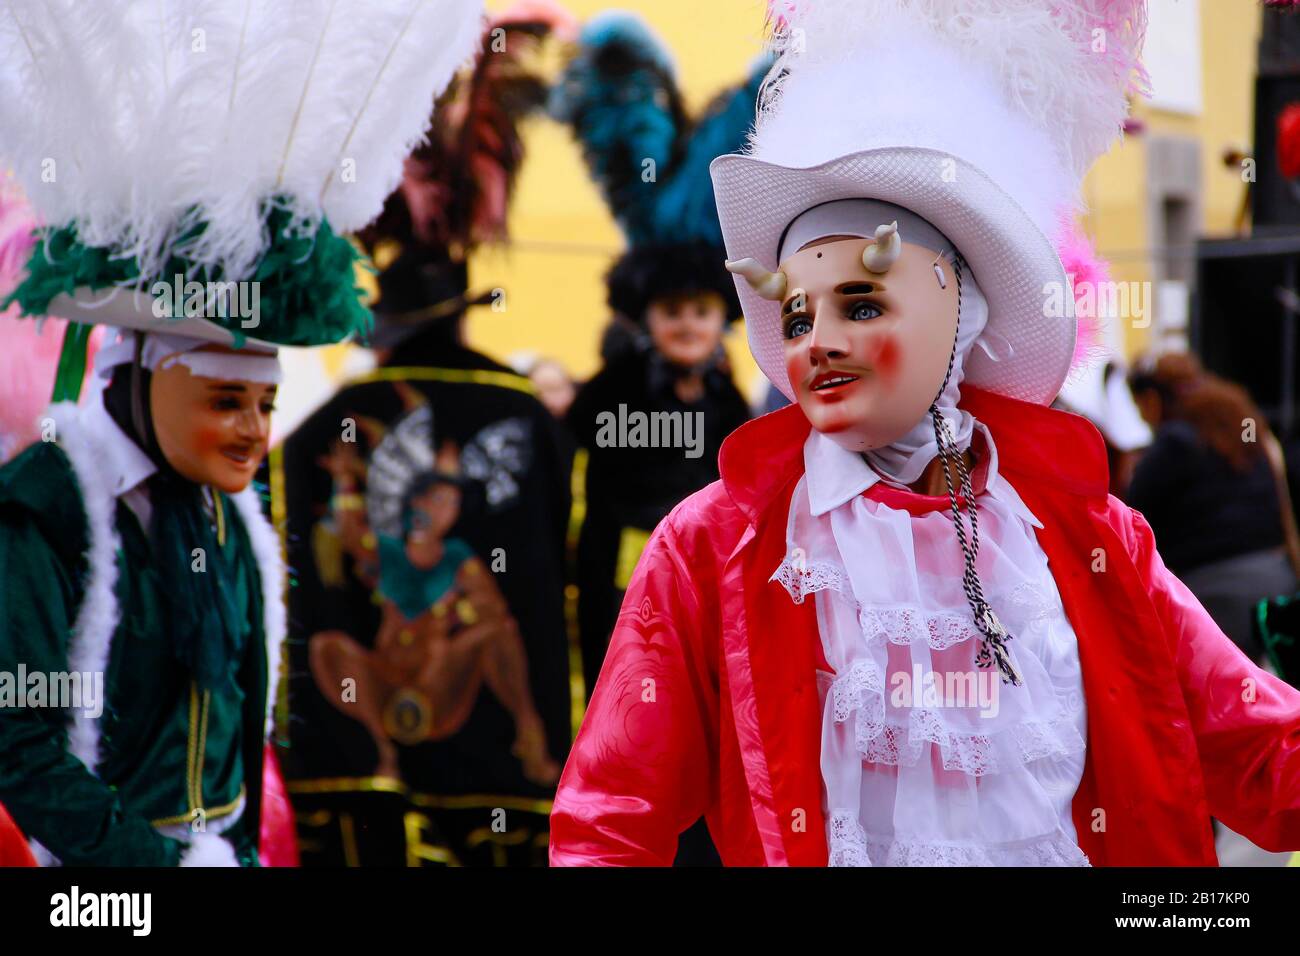 Huehues Mexique, danseuse portant un costume traditionnel mexicain folklorique et masque riche en couleurs. Scène de Carnaval. Carnaval Mexicain Banque D'Images